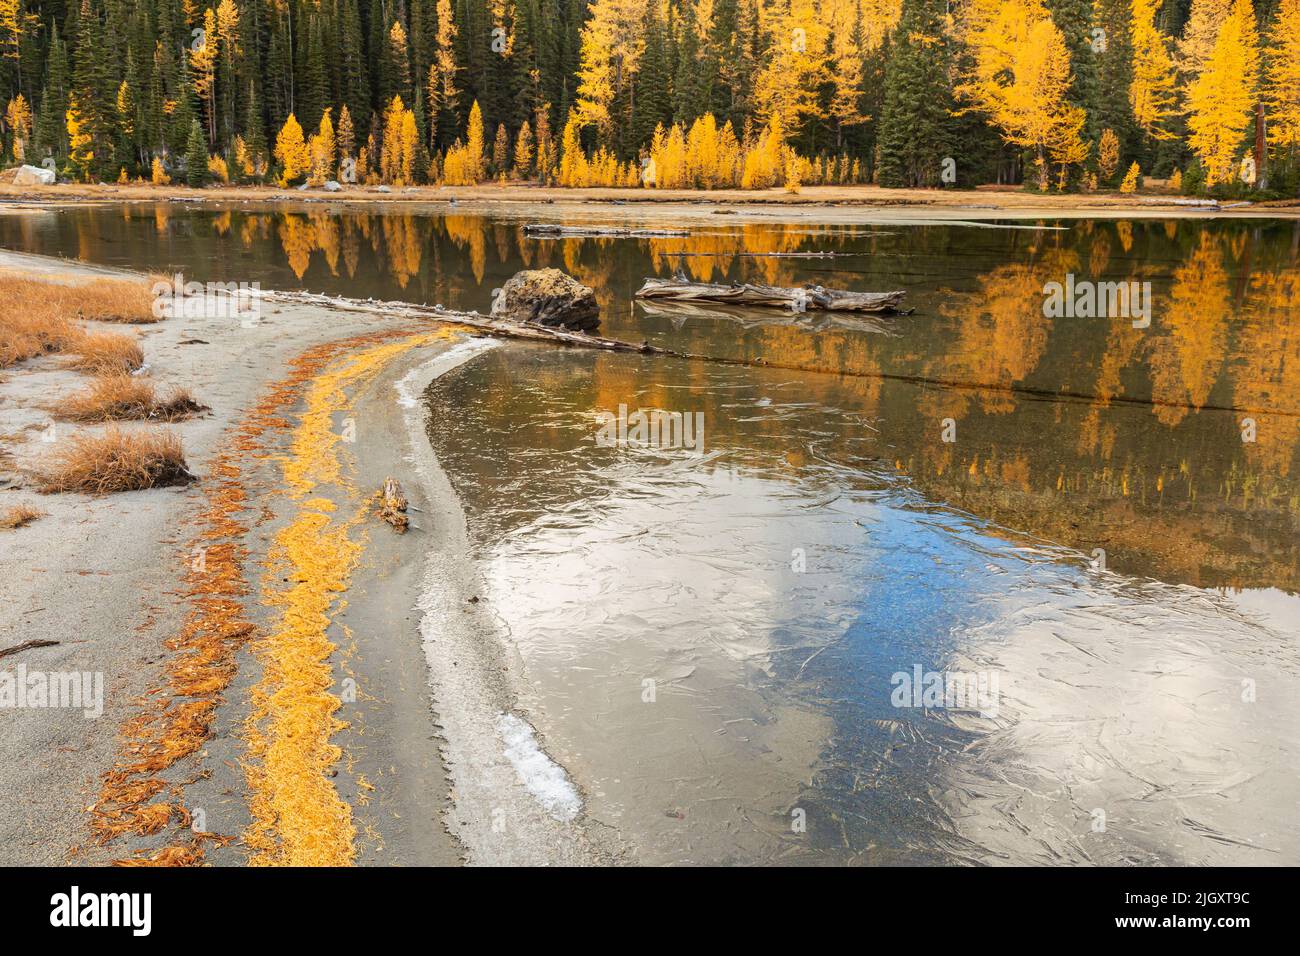 WA21727-00...WASHINGTON - les mélèzes alpins, aux couleurs éclatantes de l'automne, entourent le lac Larch dans la région sauvage de Glacier Peak. Banque D'Images